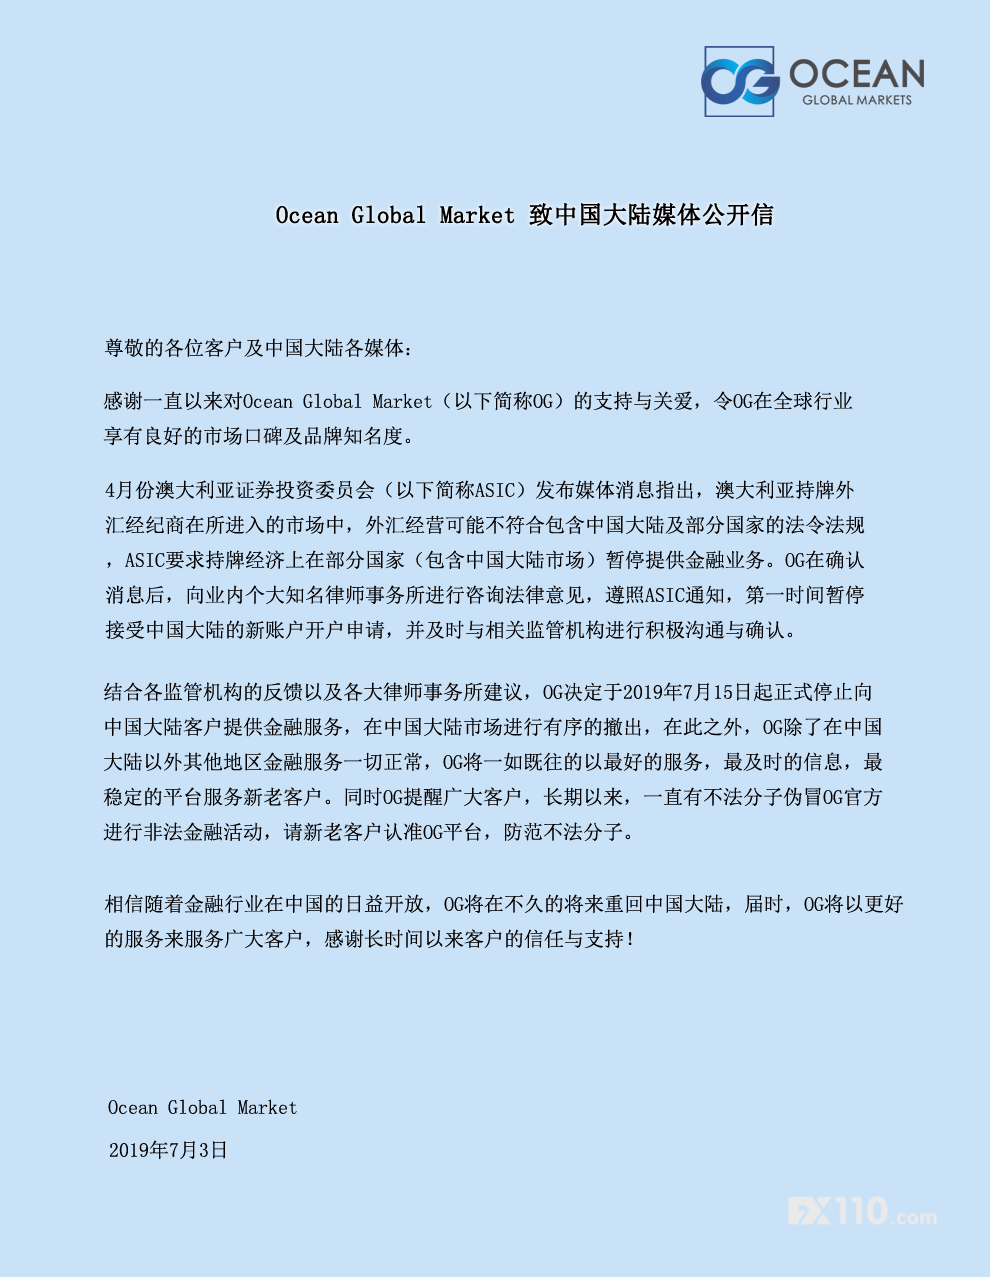 OGFX7月15日起停止向中国大陆客户提供金融服务